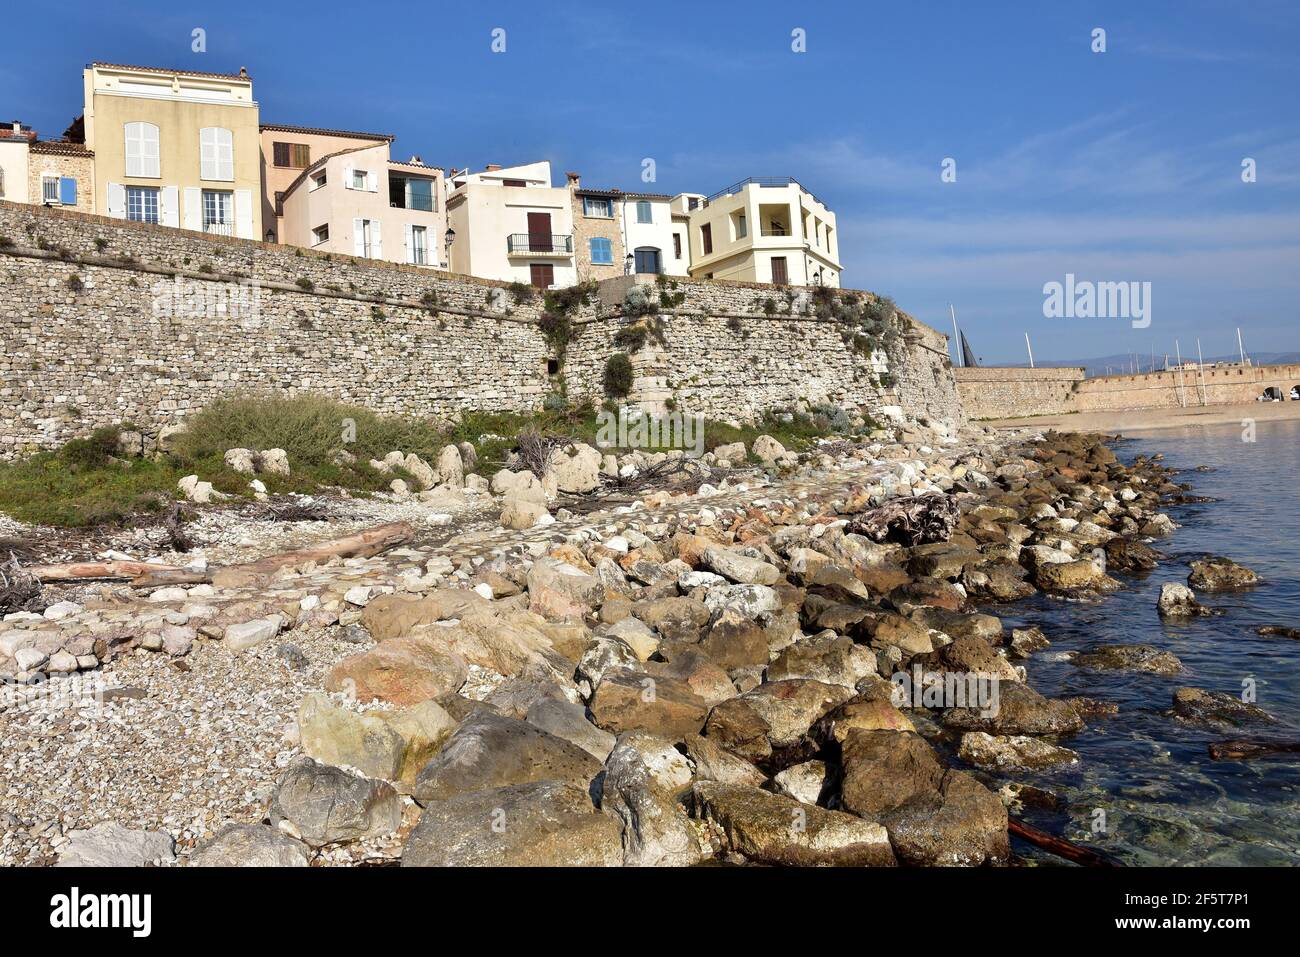 Francia, Antibes, le case del centro storico, i bastioni e la piccola spiaggia di Gravette il cui accesso è al porto. Foto Stock